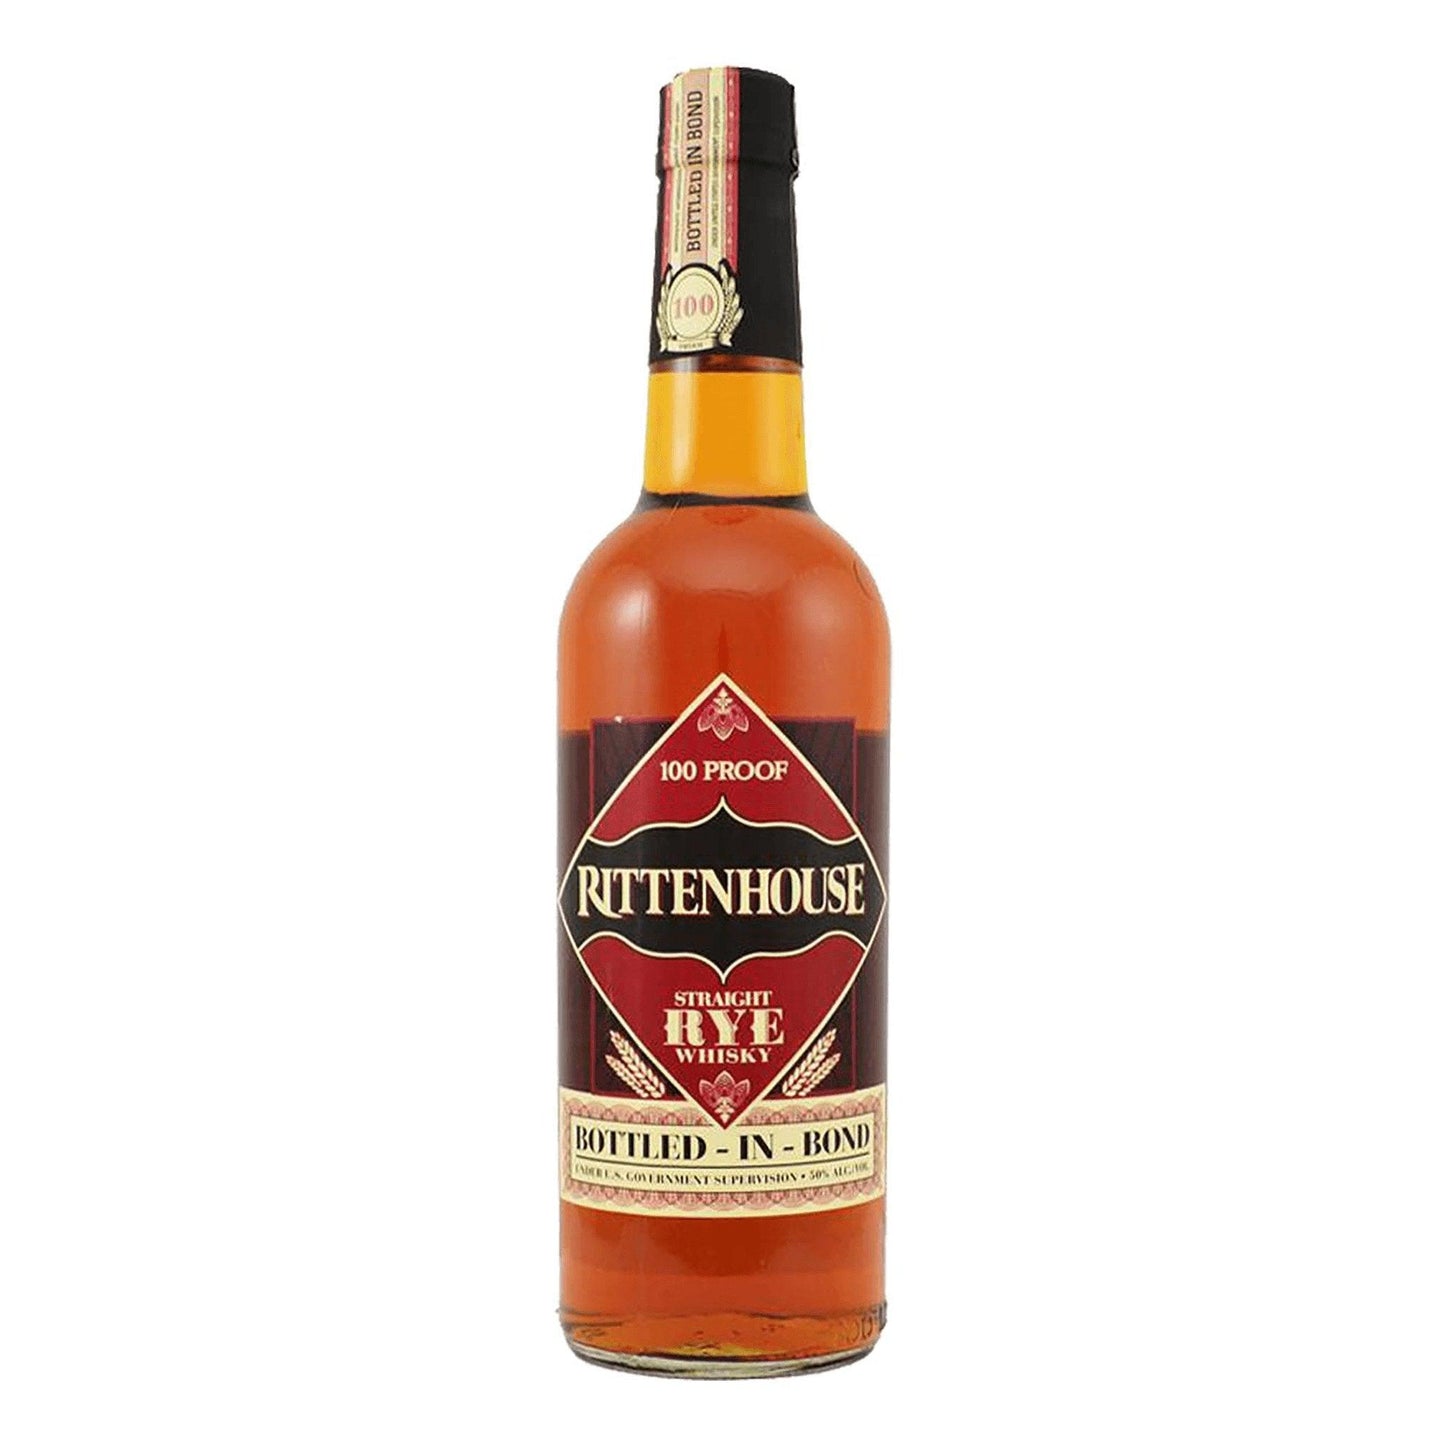 Rittenhouse Bottled In Bond Straight Rye Whisky 700mL - Booze House